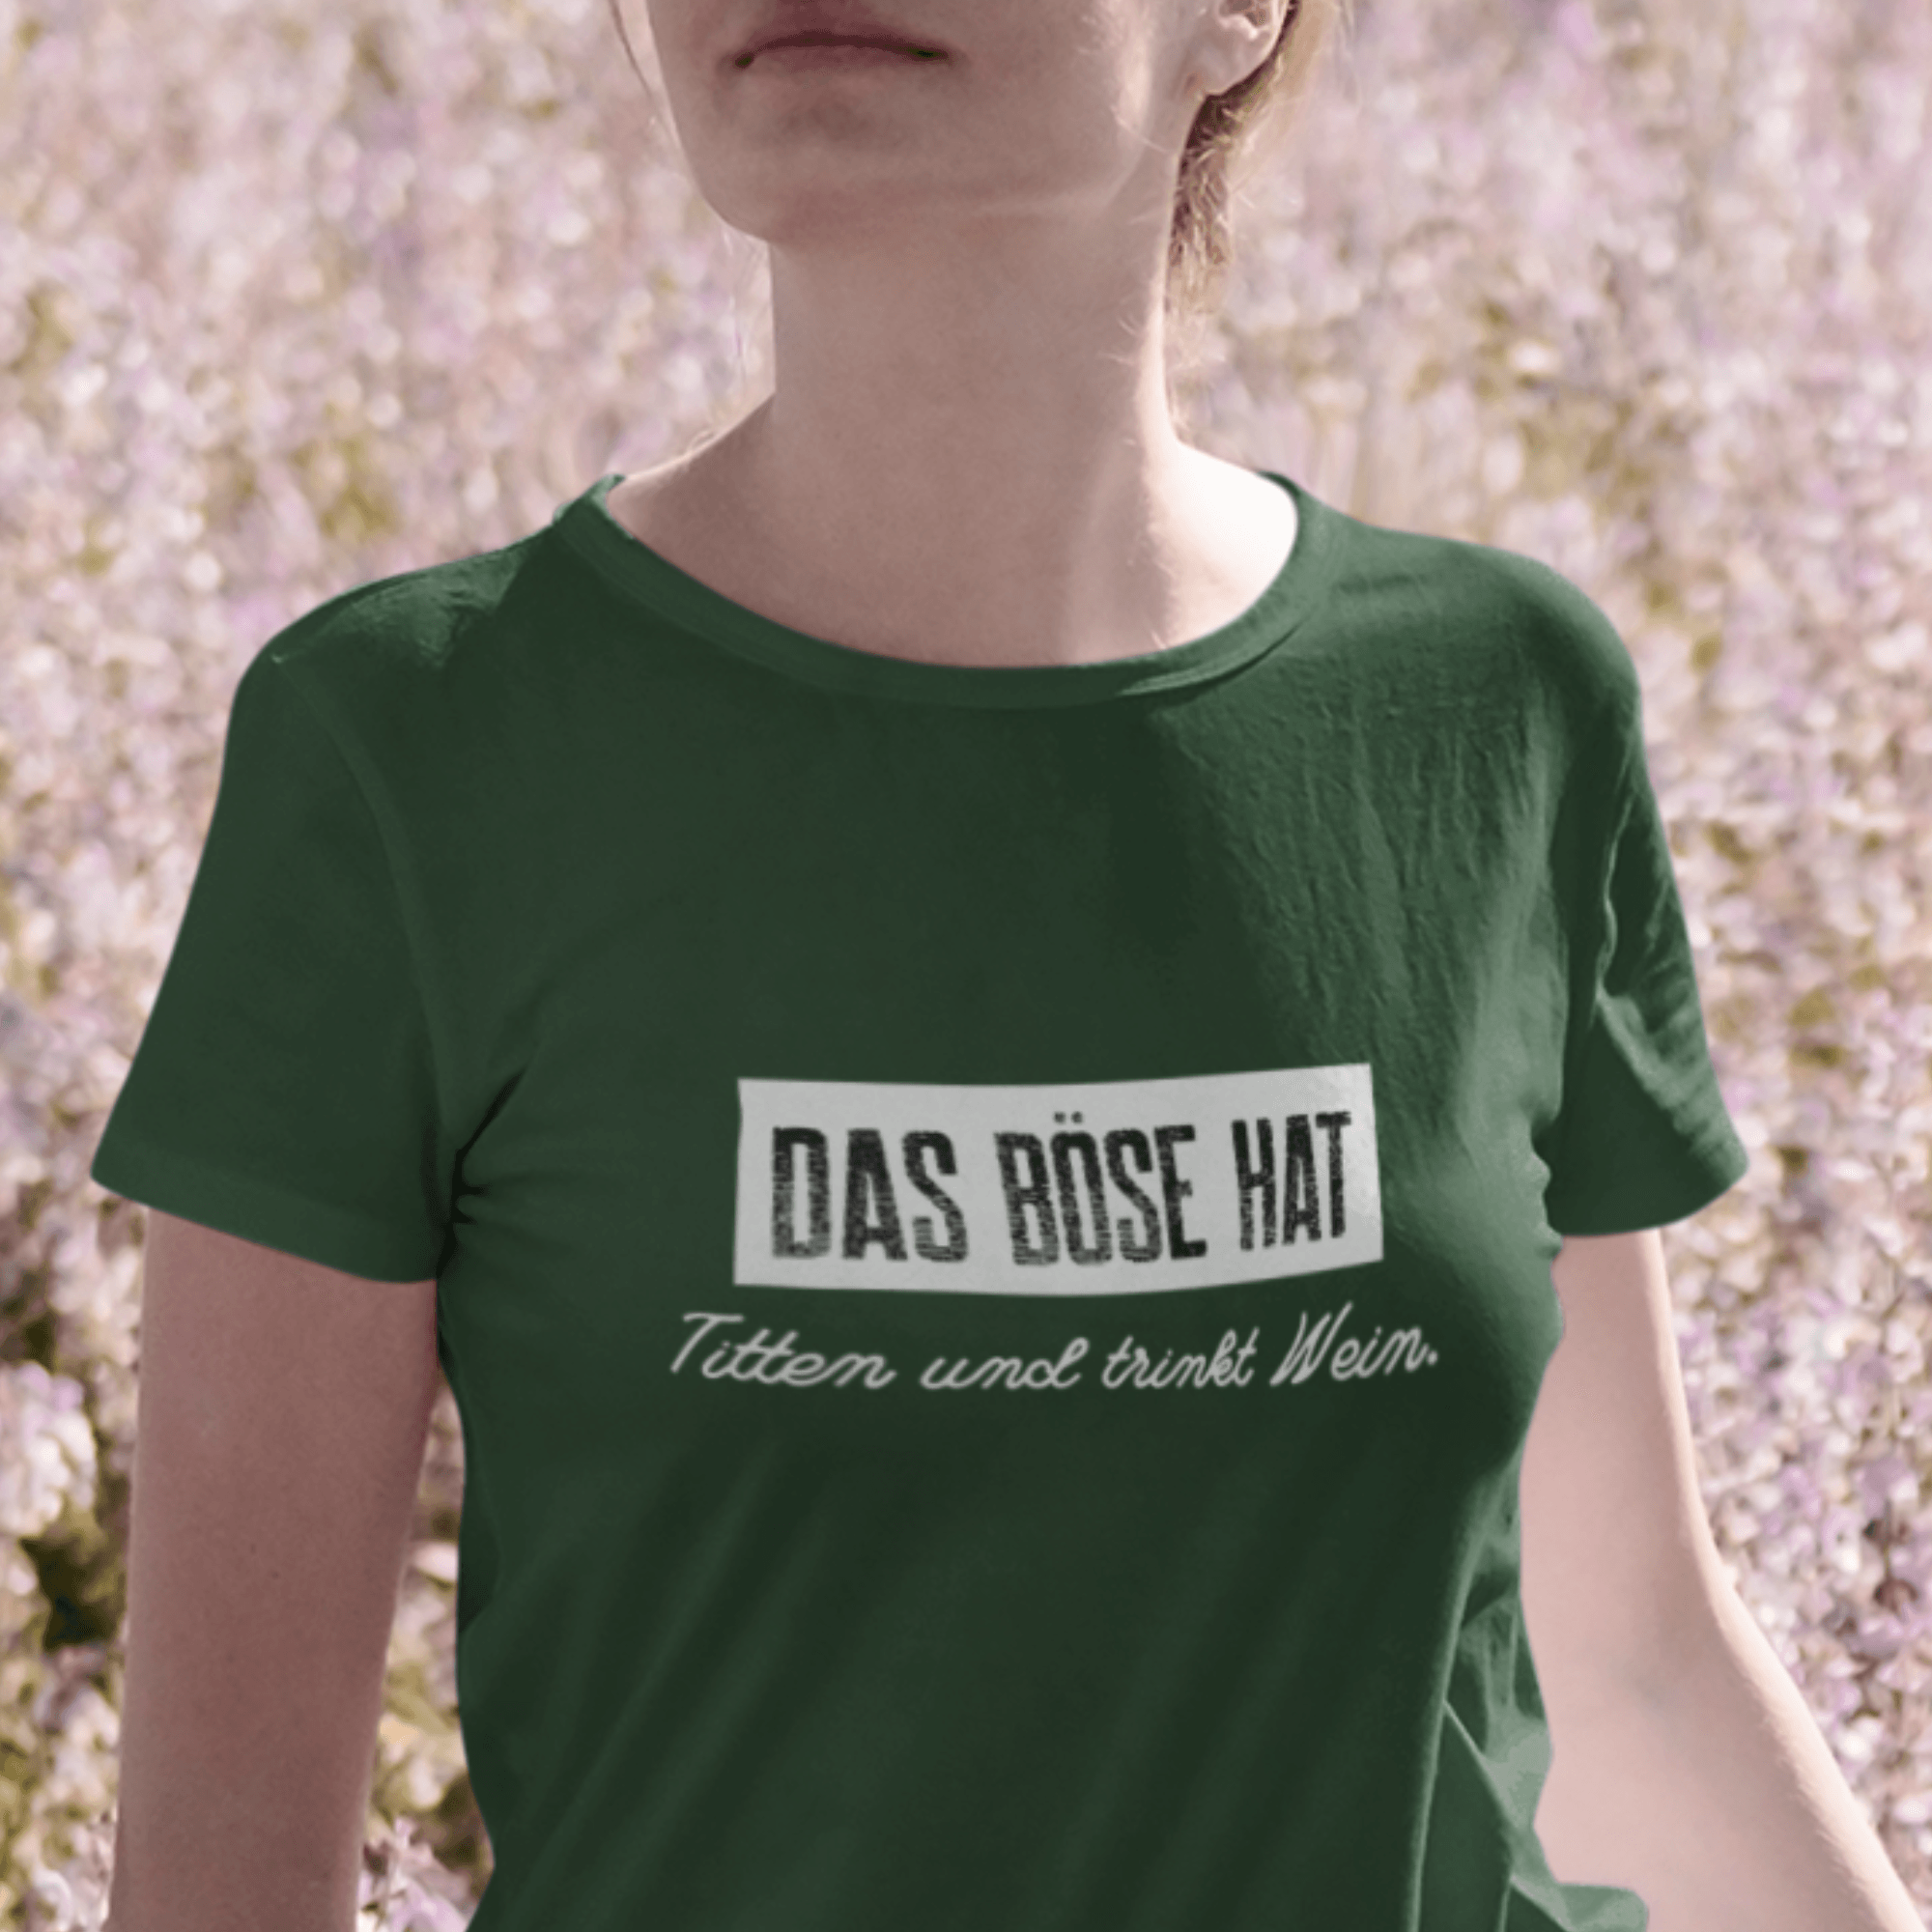 DAS BÖSE TRINKT WEIN - Damen Premiumshirt - einschenken24.de